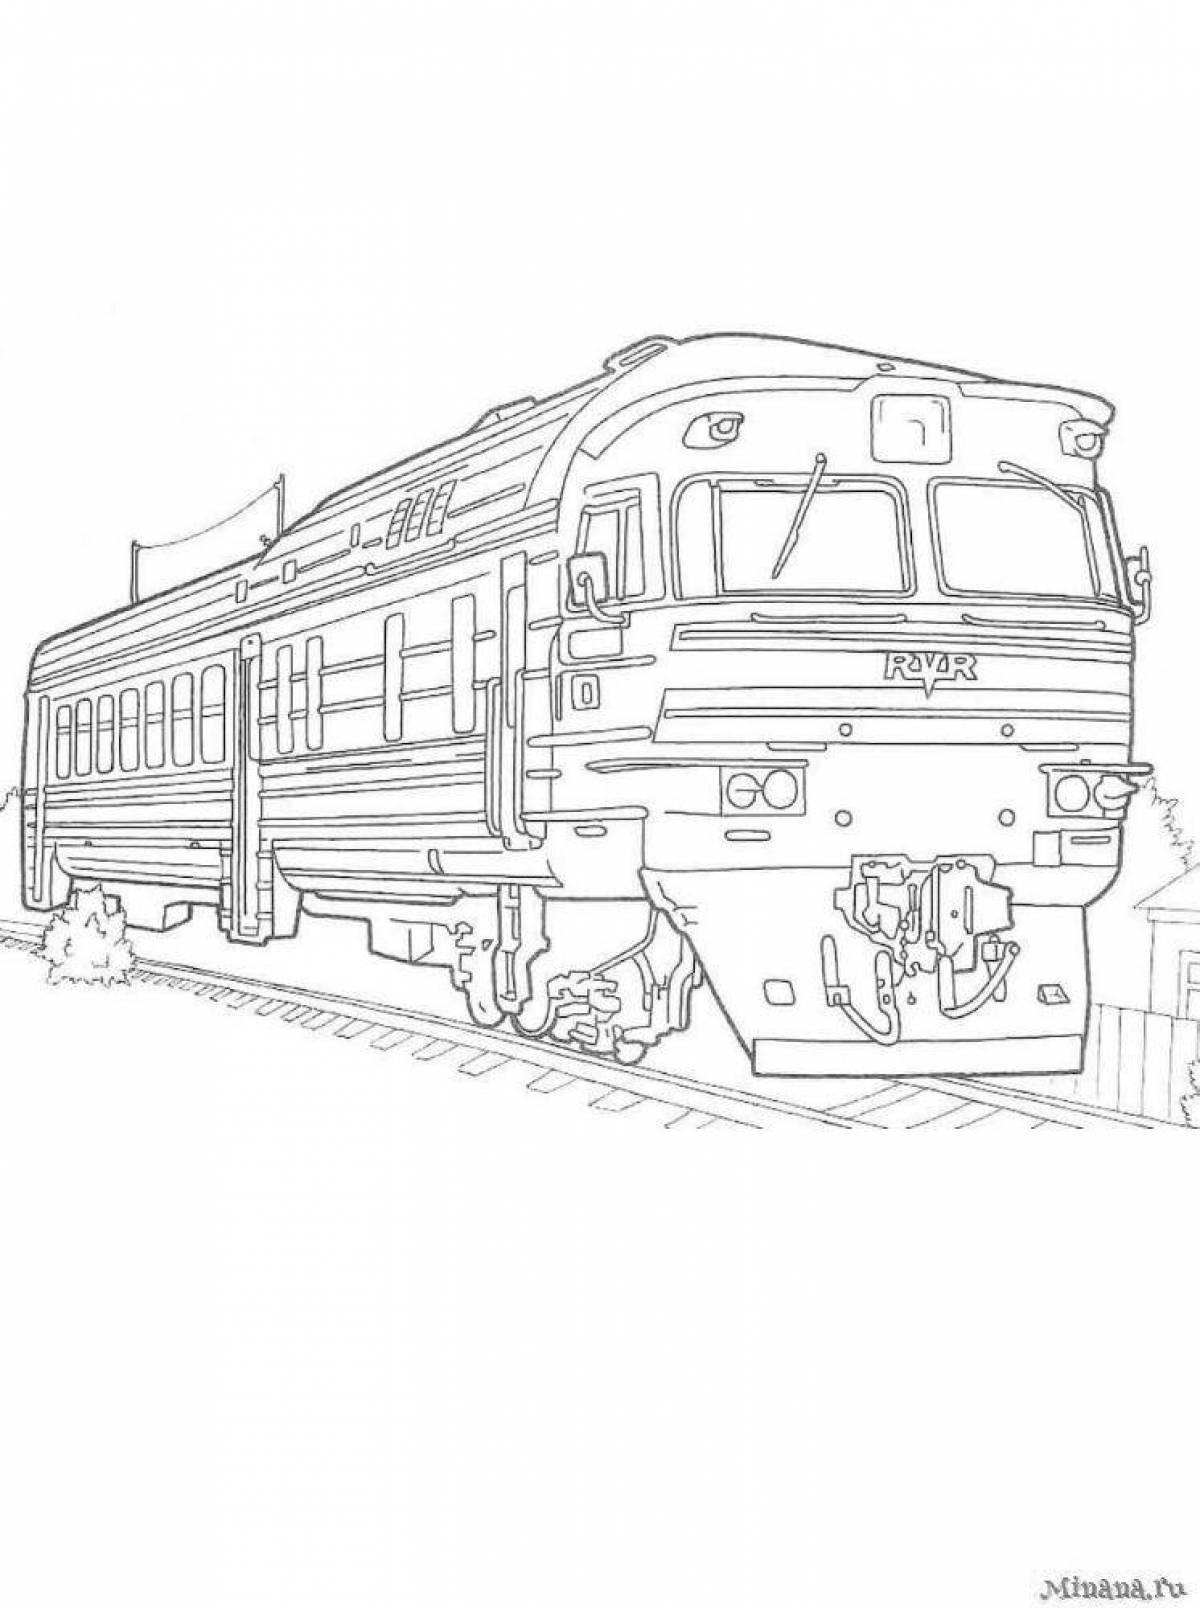 Модная раскраска поезда ржд